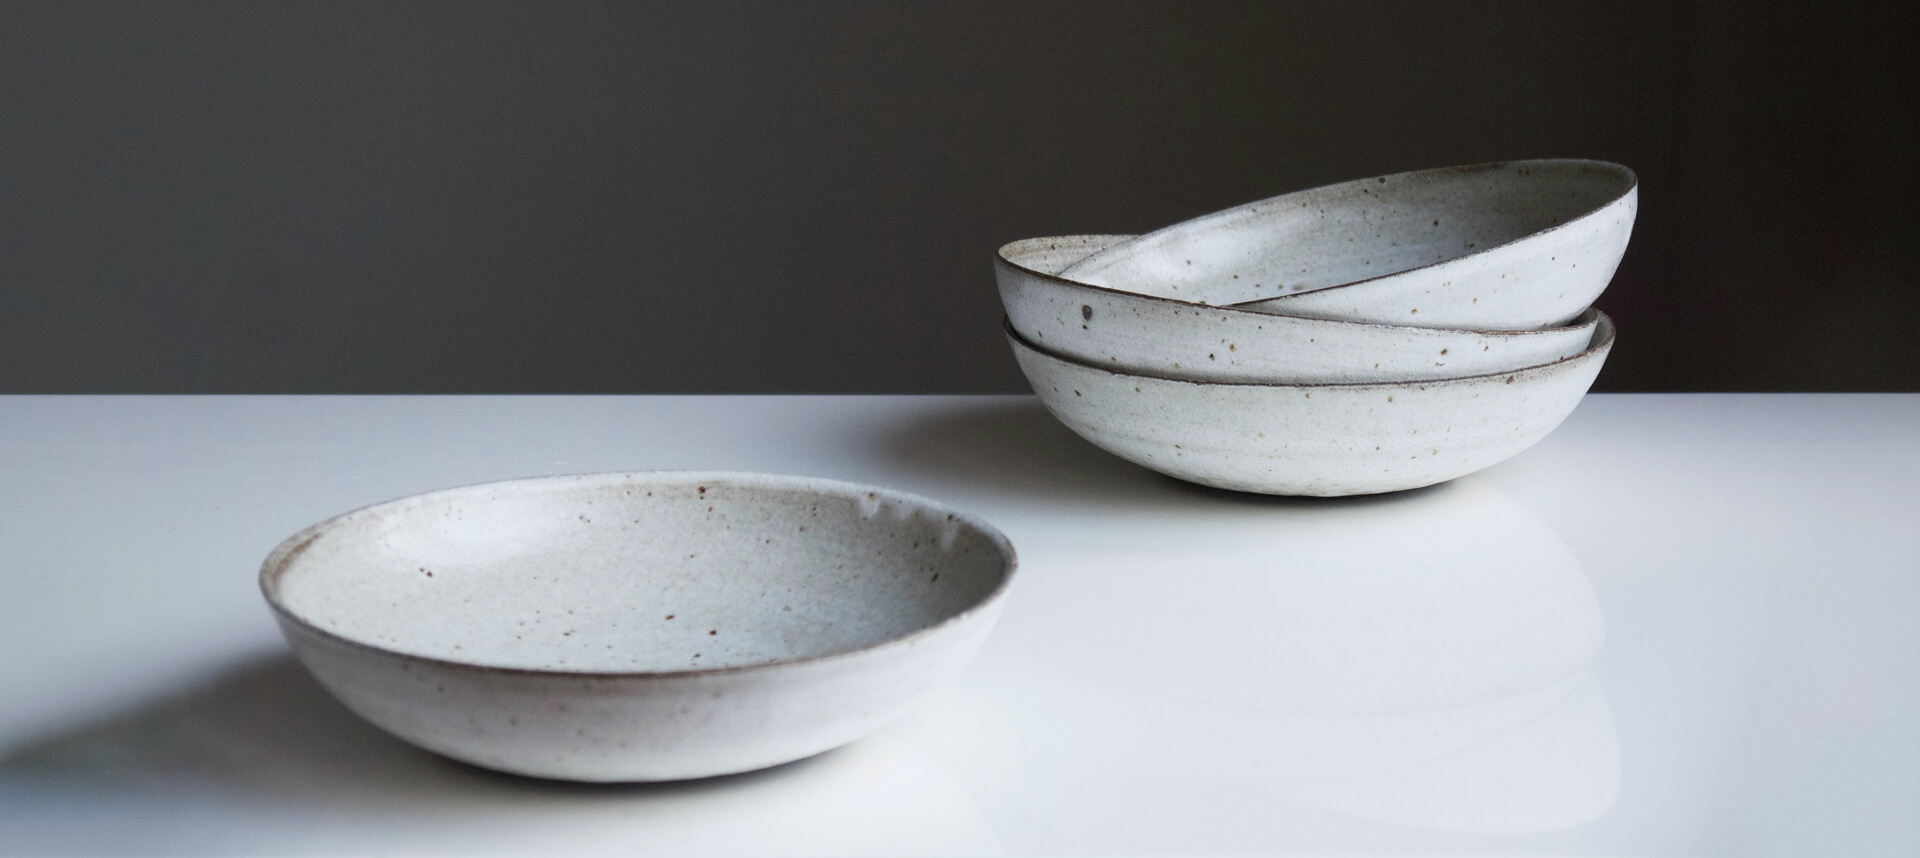 perfect ceramics for plates